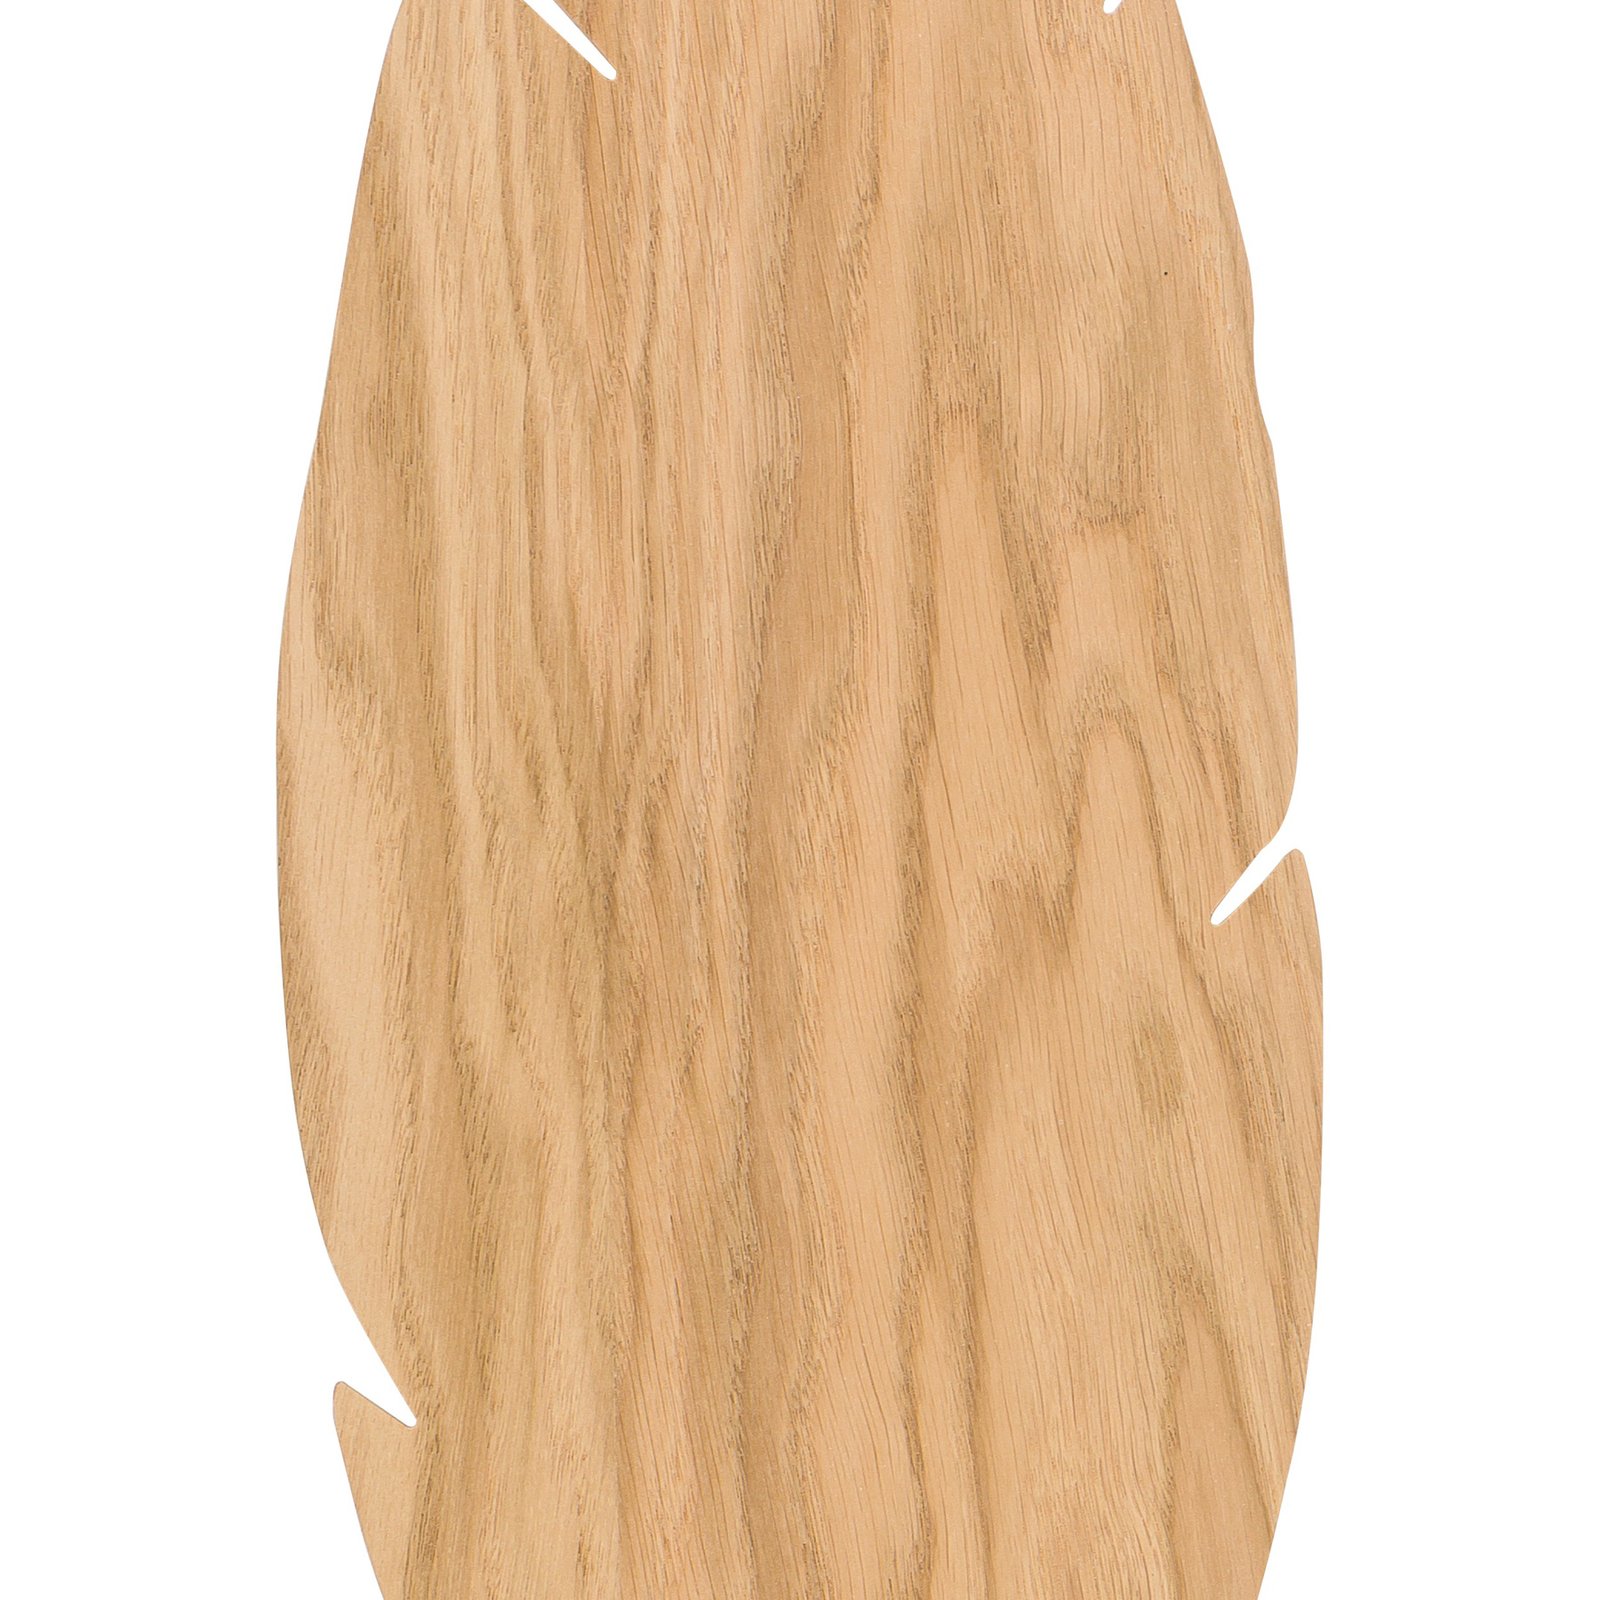 Envostar kinkiet Lehti, kształt liścia, jasne drewno, 51 x 18 cm